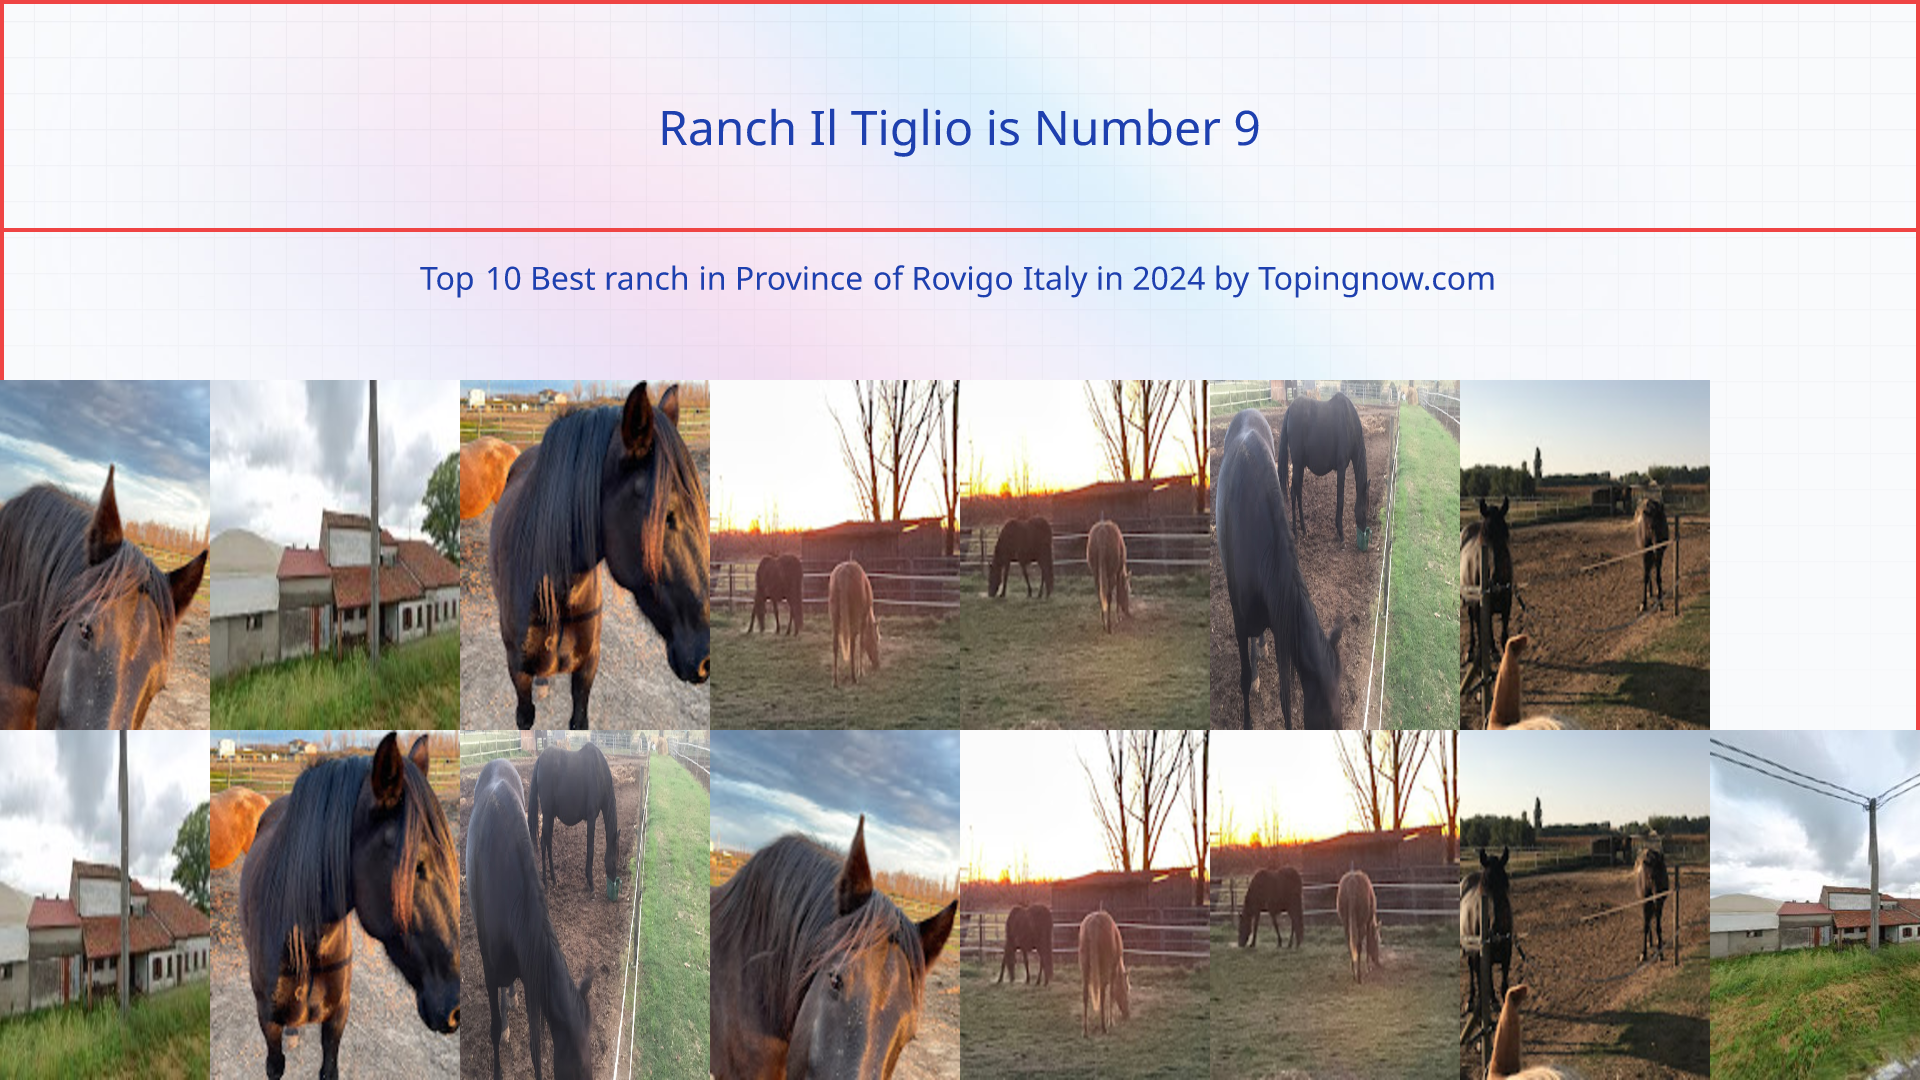 Ranch Il Tiglio: Top 10 Best ranch in Province of Rovigo Italy in 2024